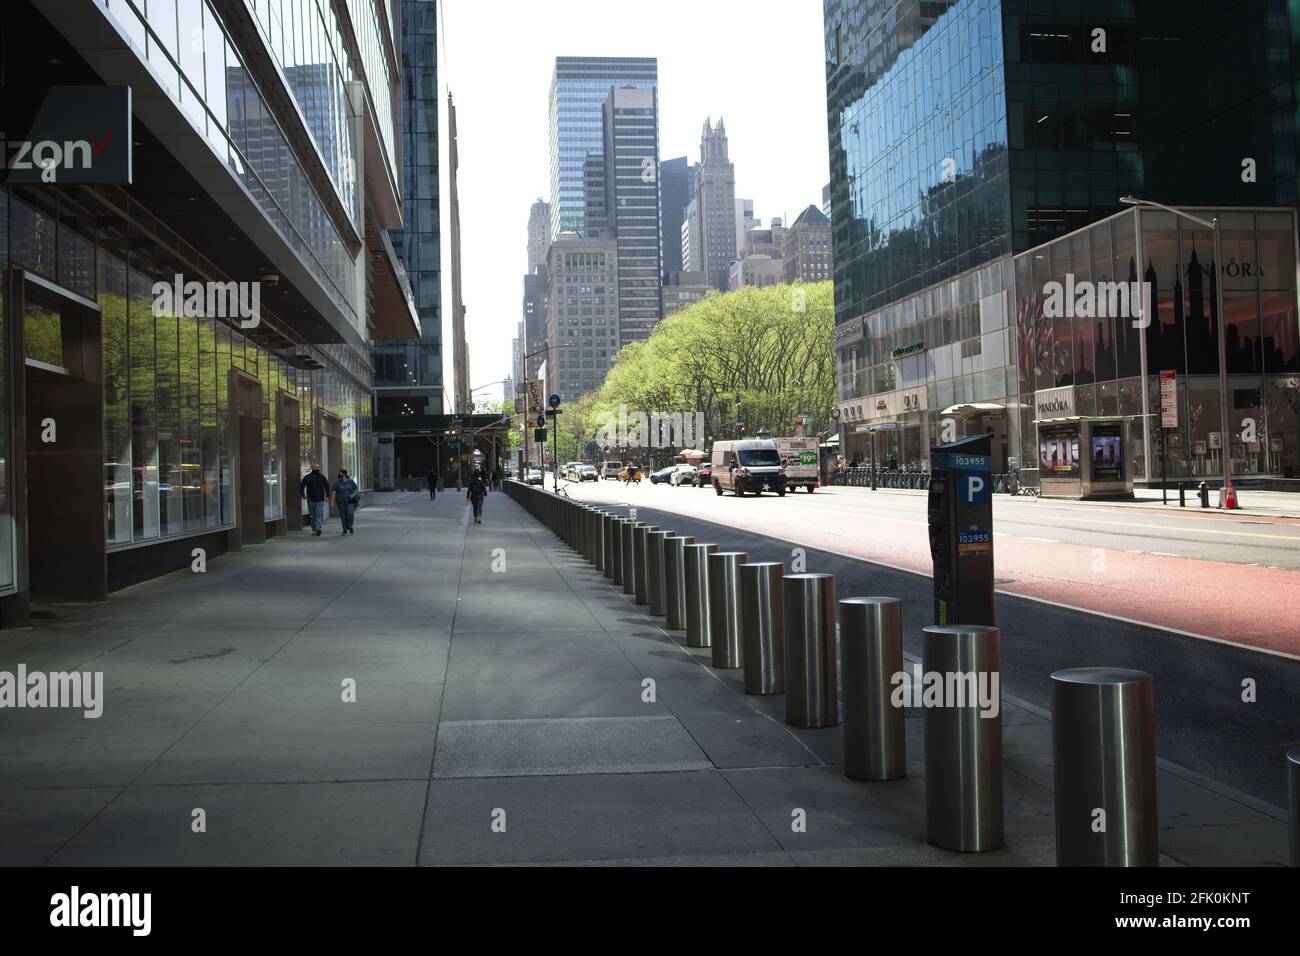 New York, NY, États-Unis - 26 avril 2021 : bollards le long du trottoir sur West 42nd Street vue en début de matinée Banque D'Images